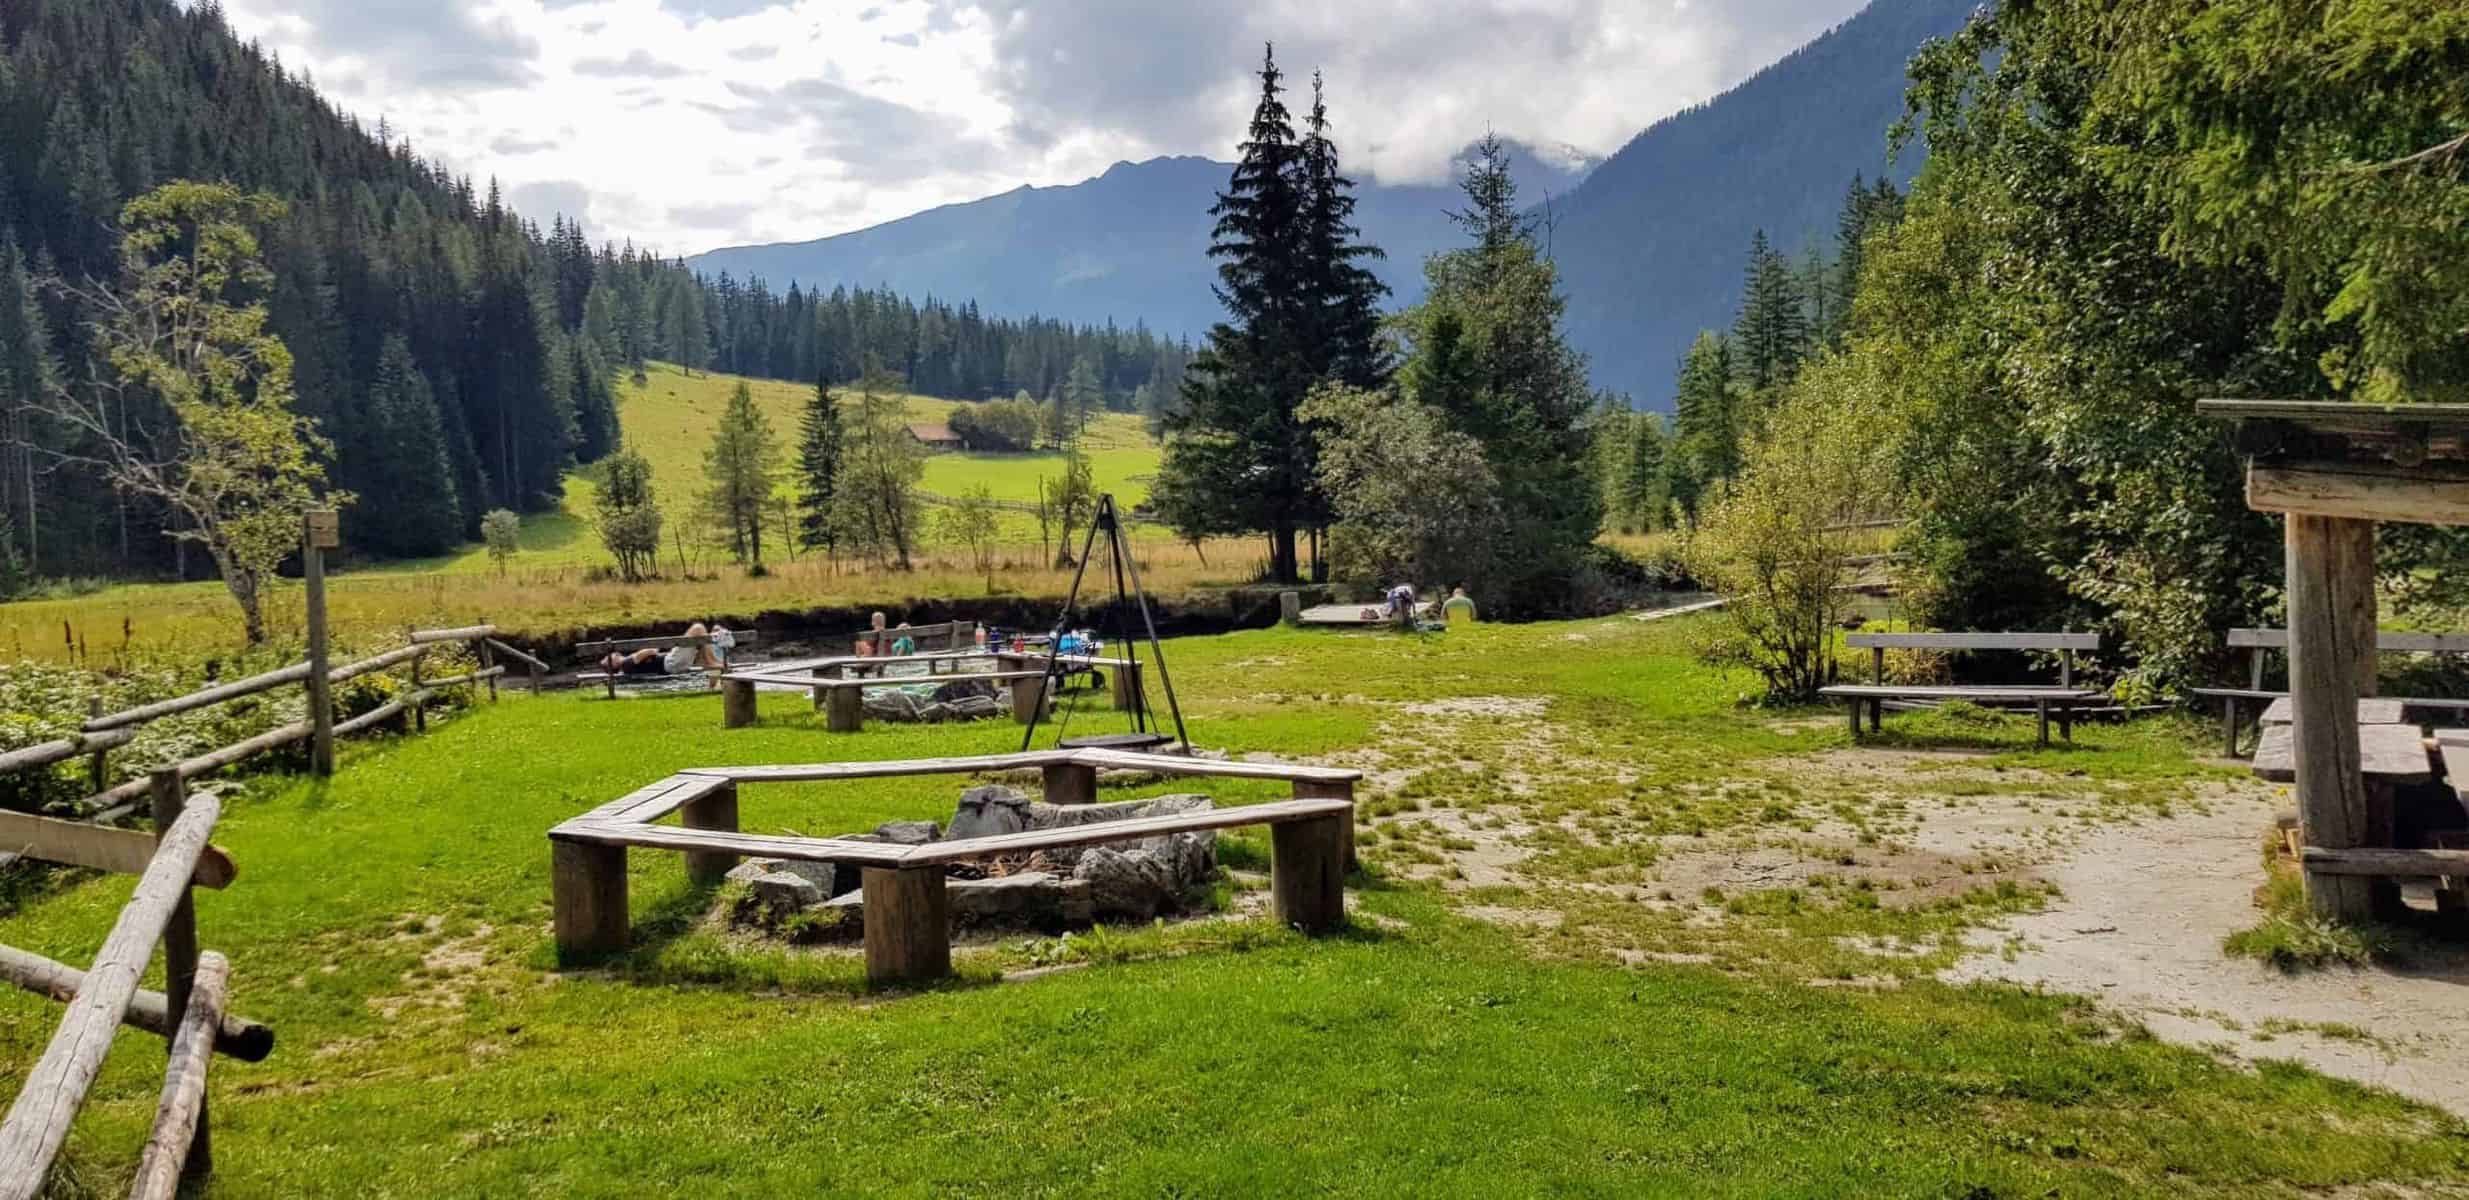 Spielplatz Outdoor mit Grillplatz bei Fluss für Familien bei Mallnitz im Nationalpark Hohe Tauern Kärnten